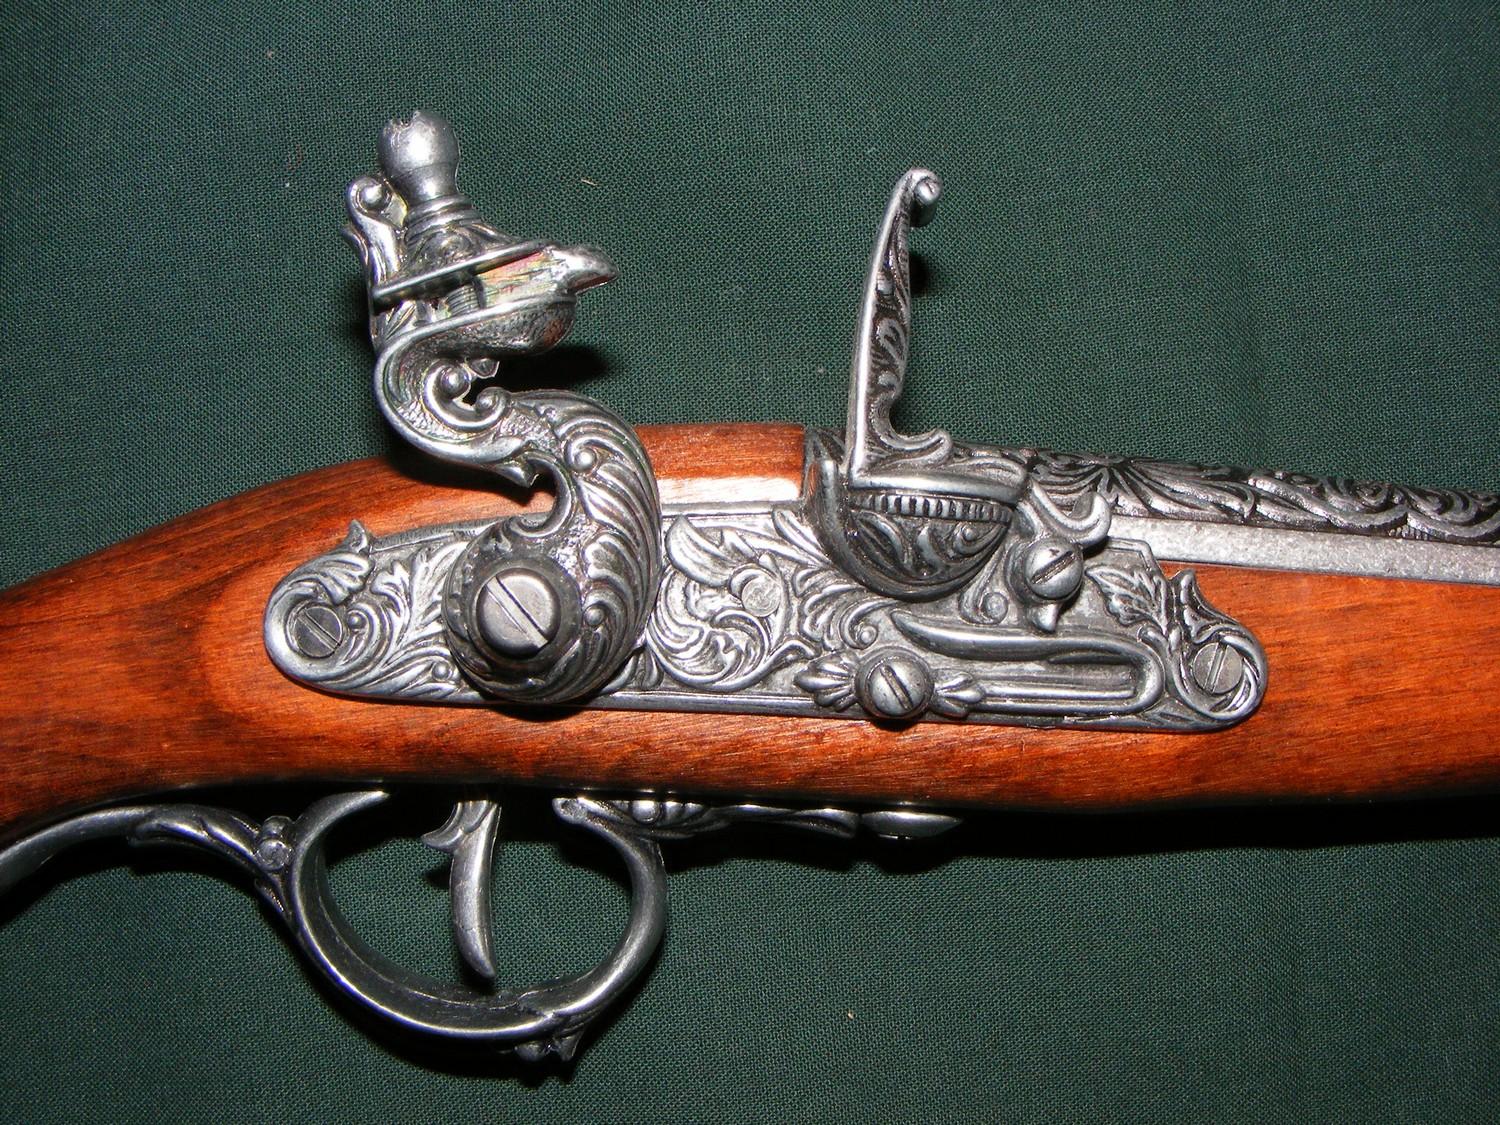 Pistolet Tromblon de Pirate de 42 cm